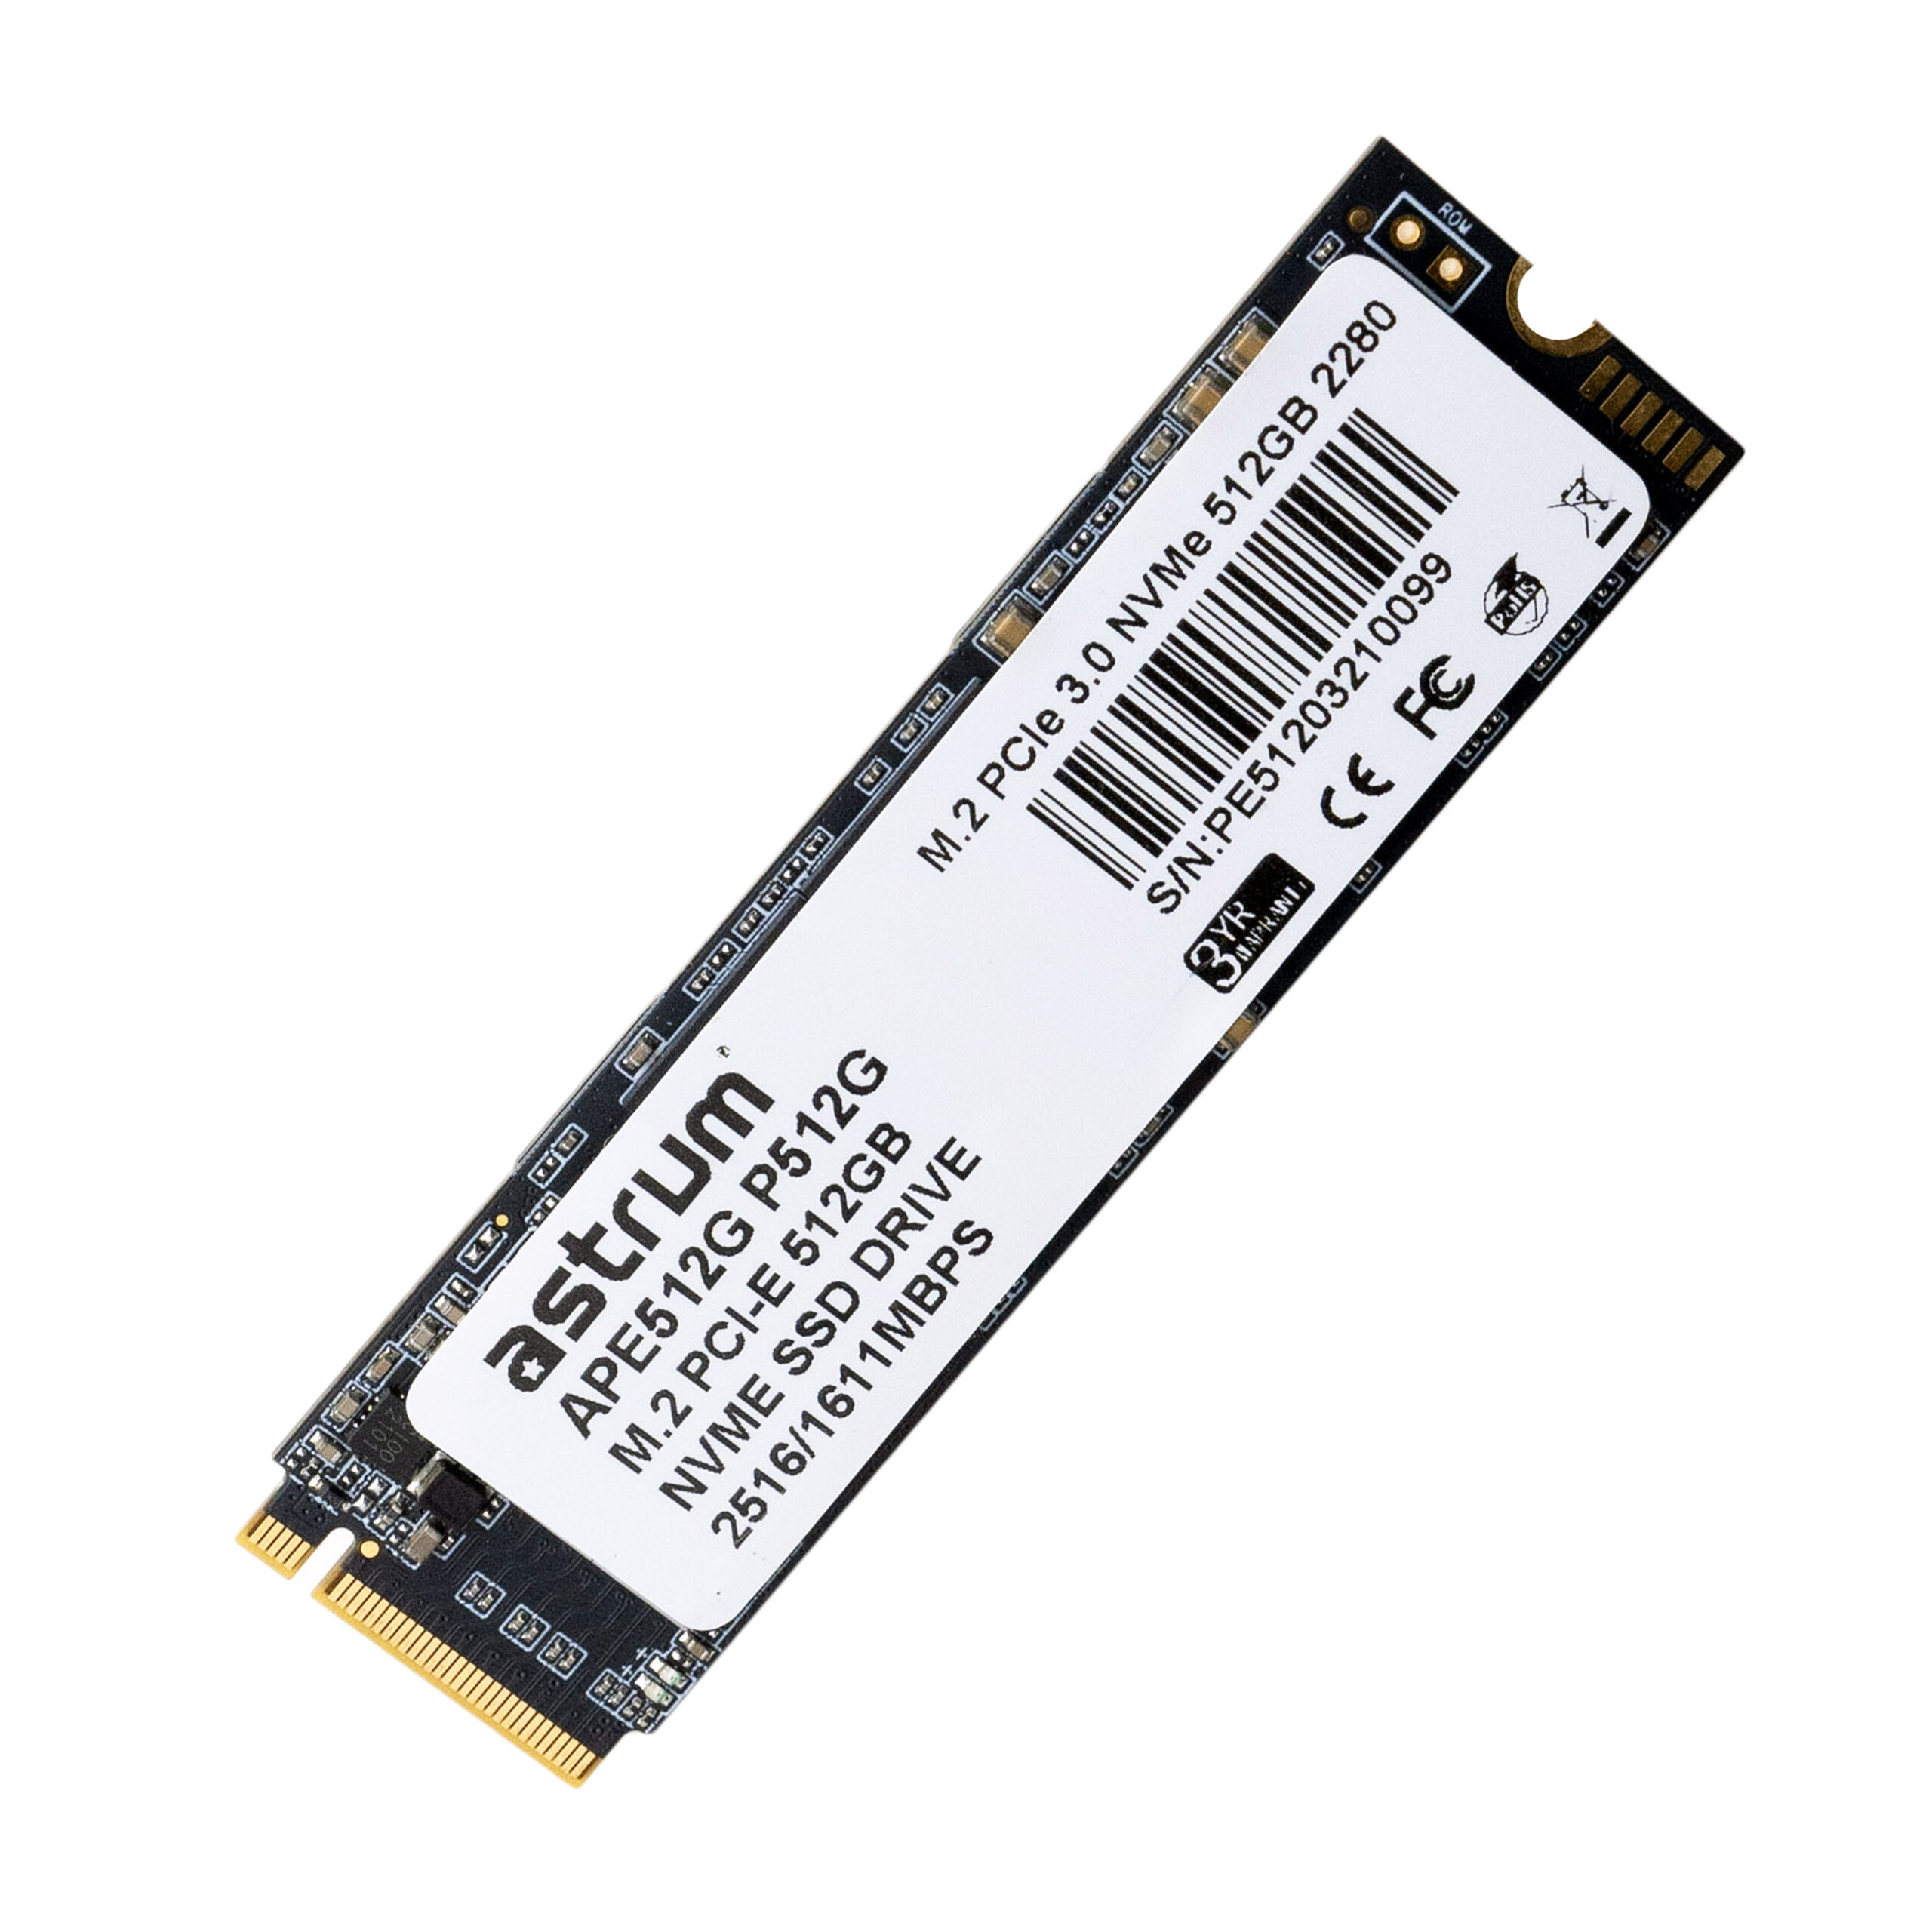 P512G 512GB PCIE-3.0 M.2 NVME SMI SSD